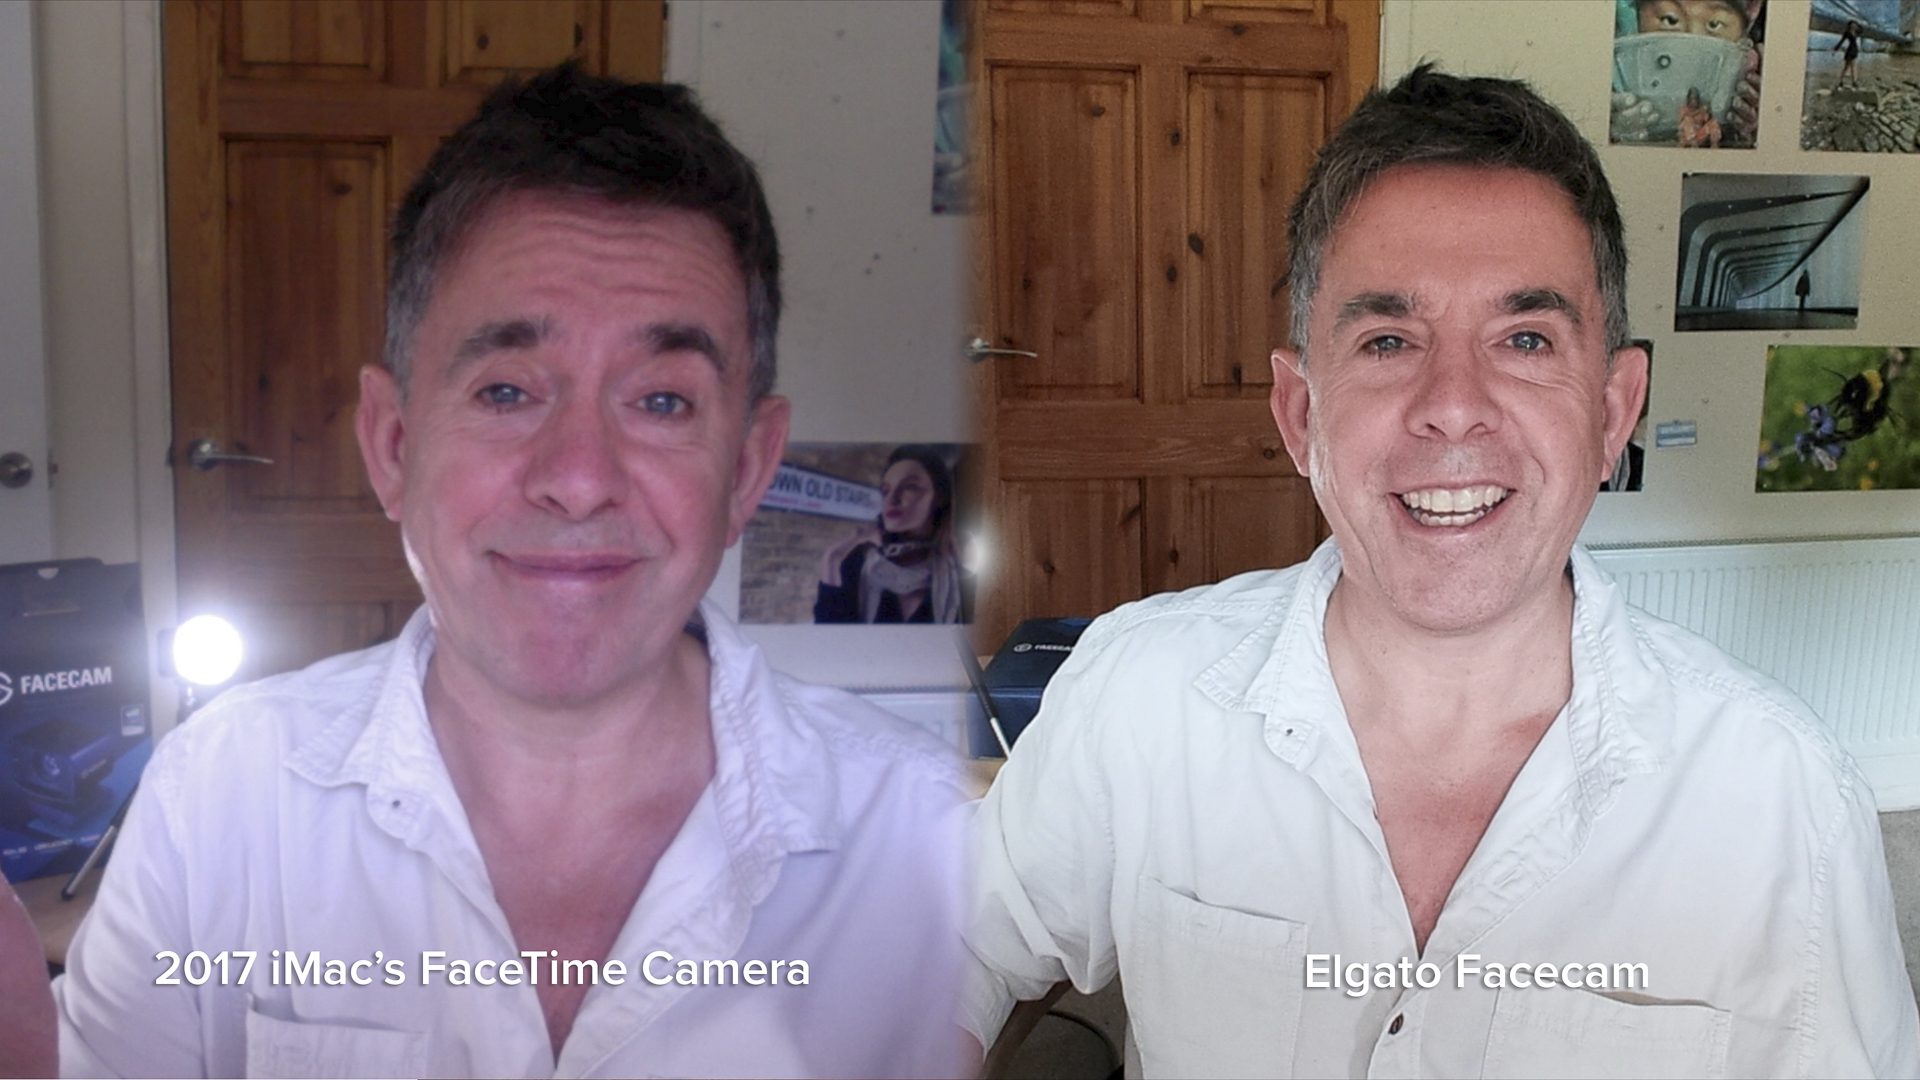 Image de revue d'Elgato Facecam montrant deux photos du célèbre critique George Carins, une fois via une webcam plus ancienne et une fois avec l'Elgato Facecam, qui est nettement meilleure.